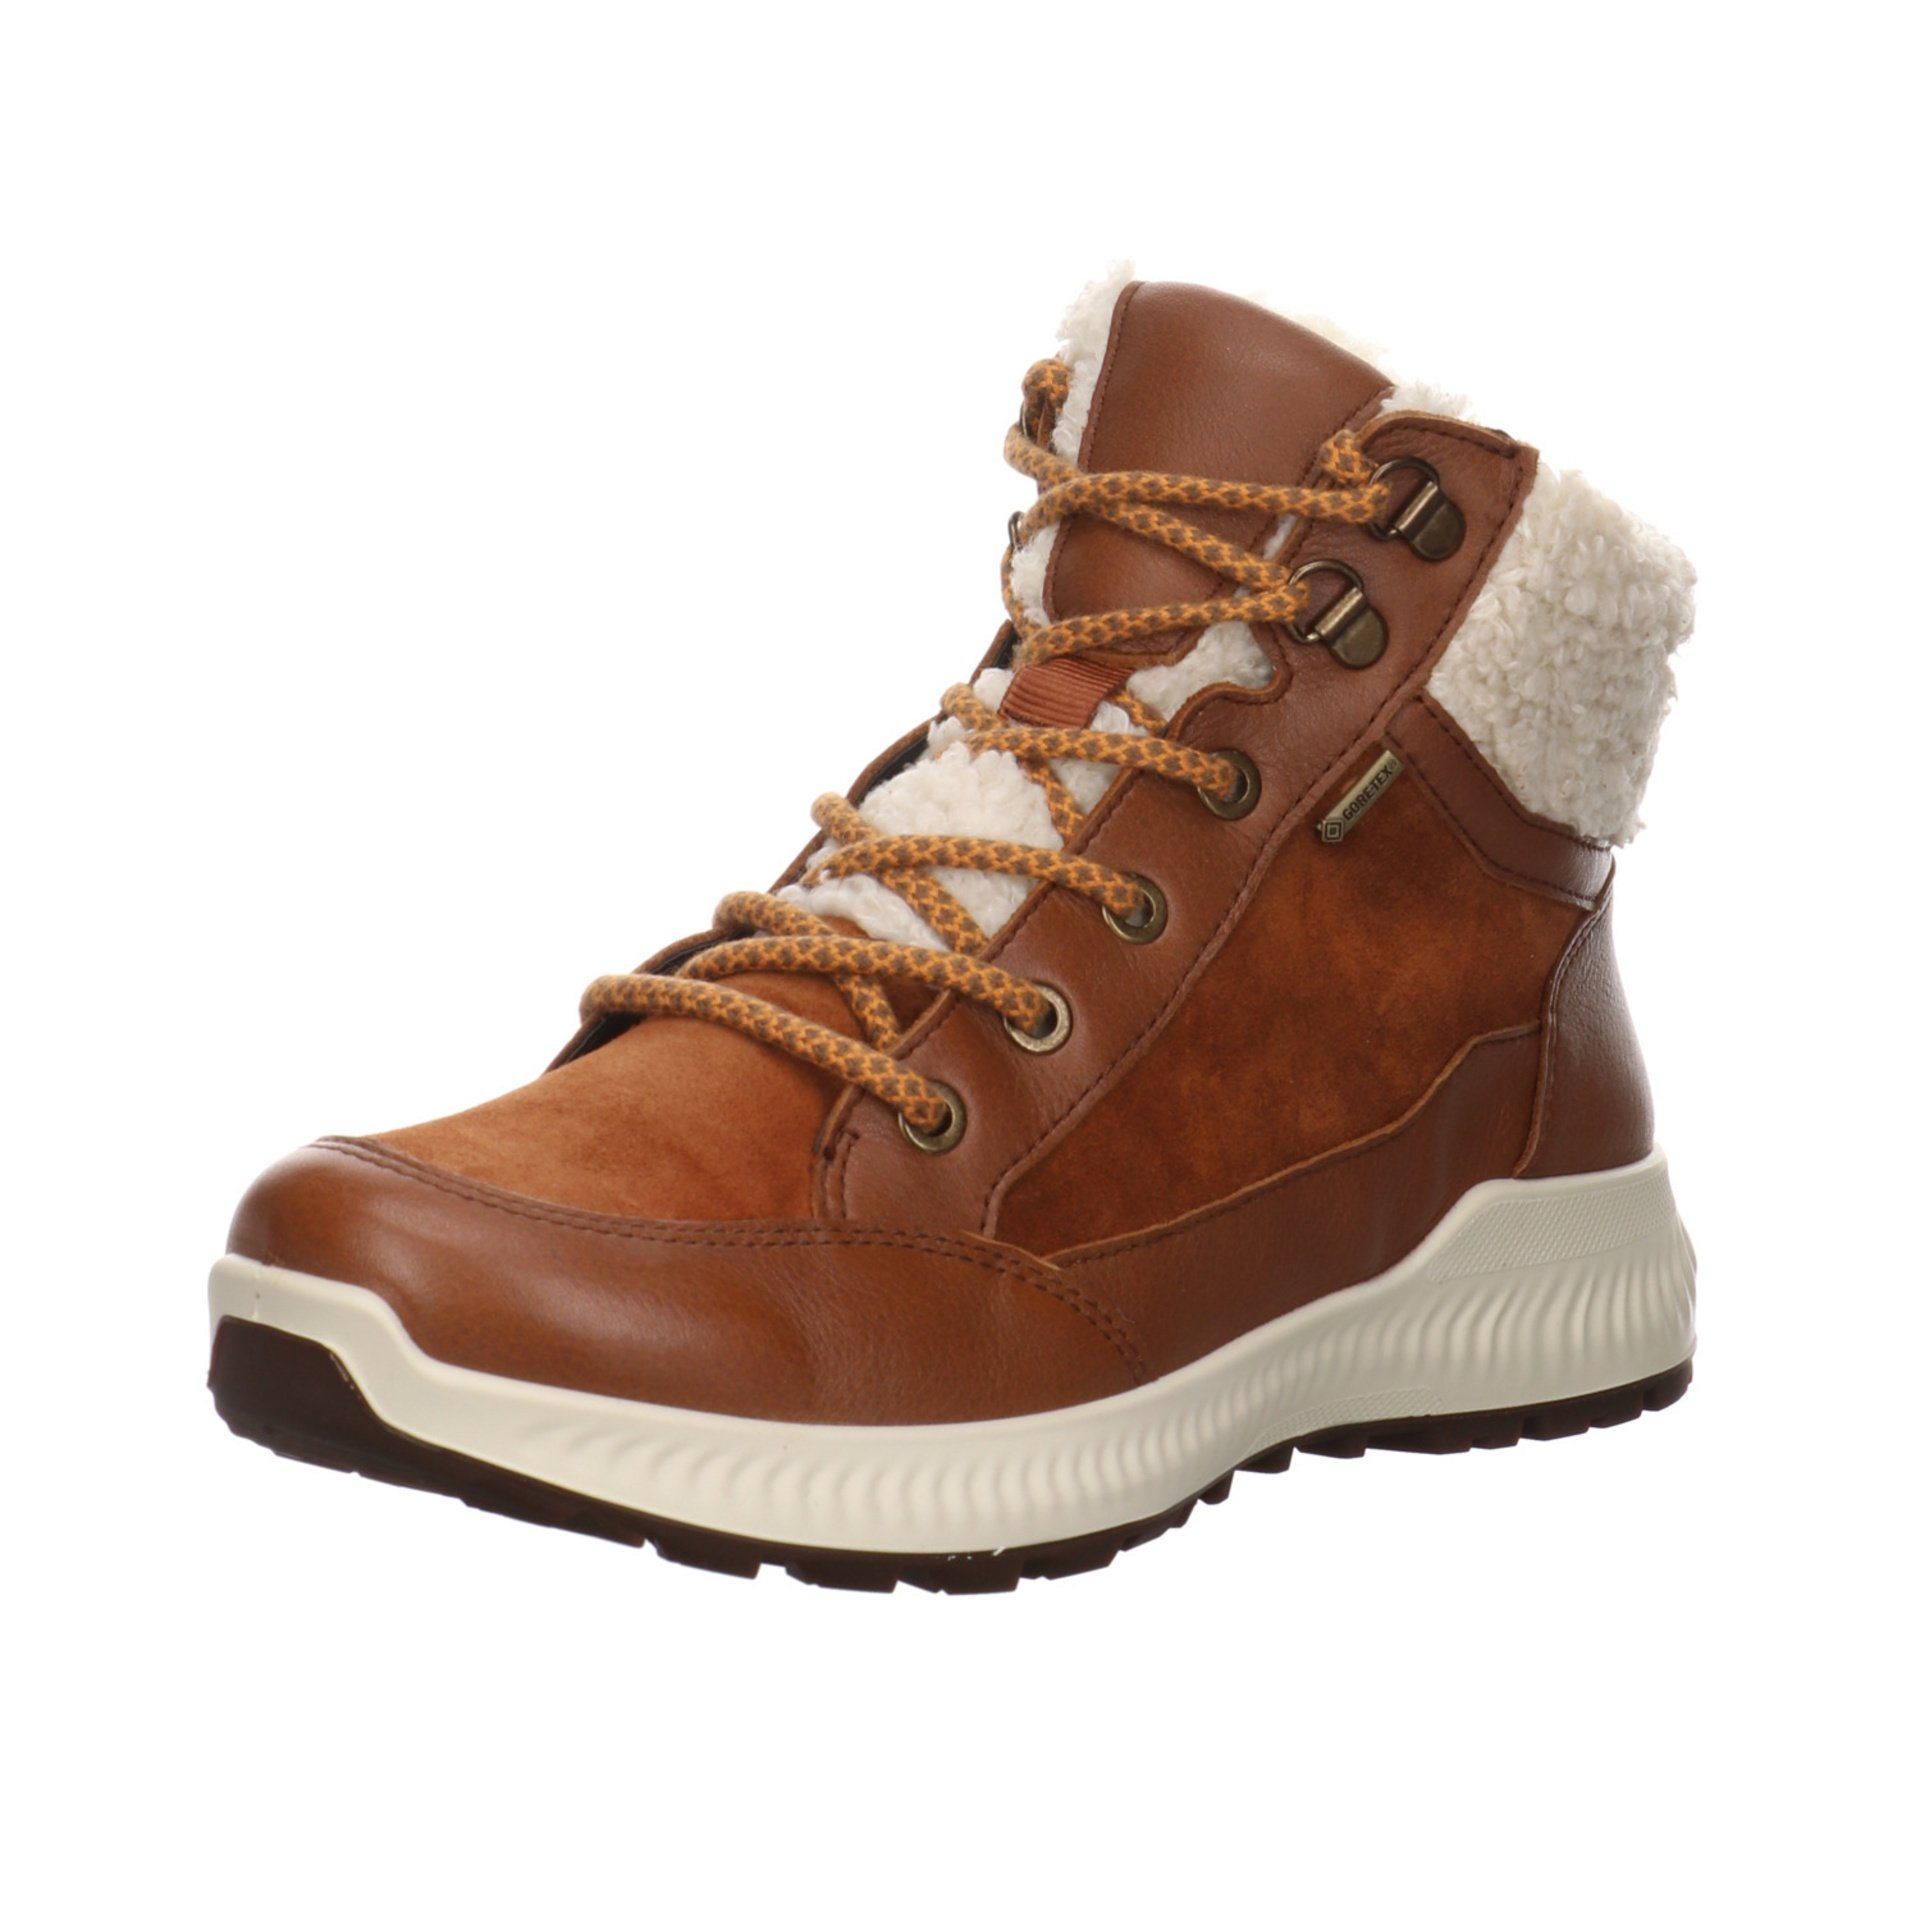 Elegant Schuhe Ara Stiefelette Damen Boots Stiefel Freizeit Leder-/Textilkombination braun Hiker 046745